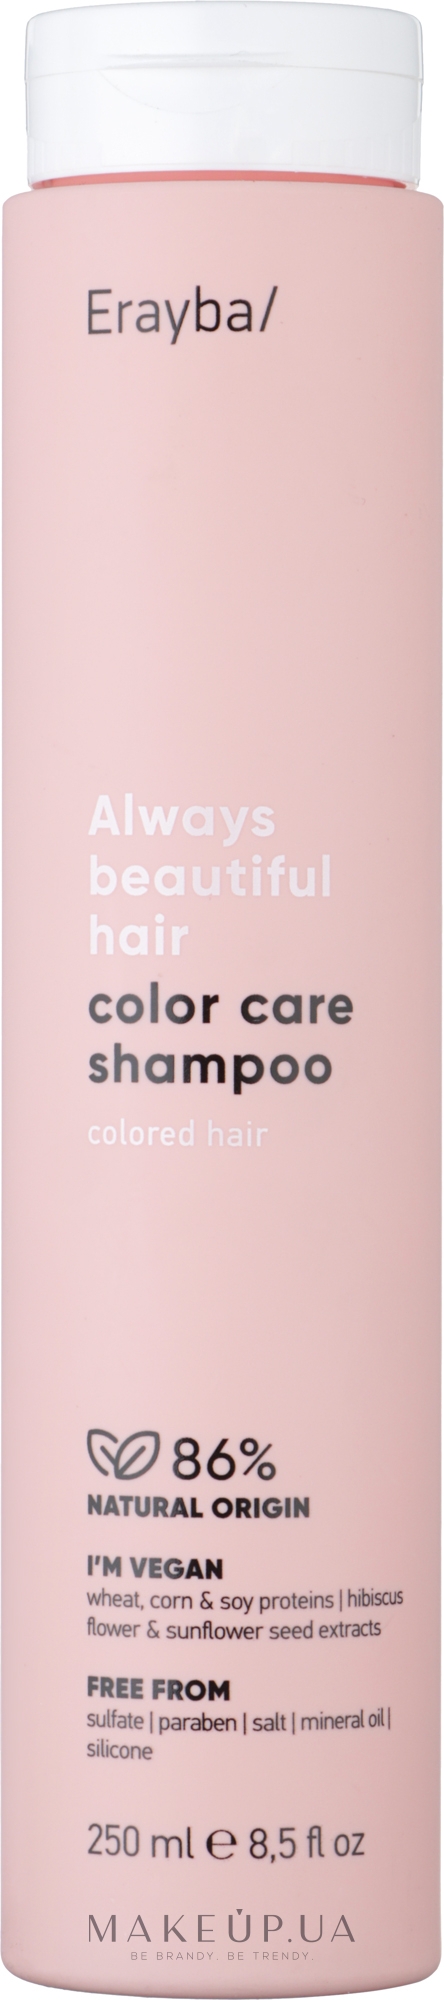 Шампунь для окрашенных волос - Erayba ABH Color Care Shampoo — фото 250ml